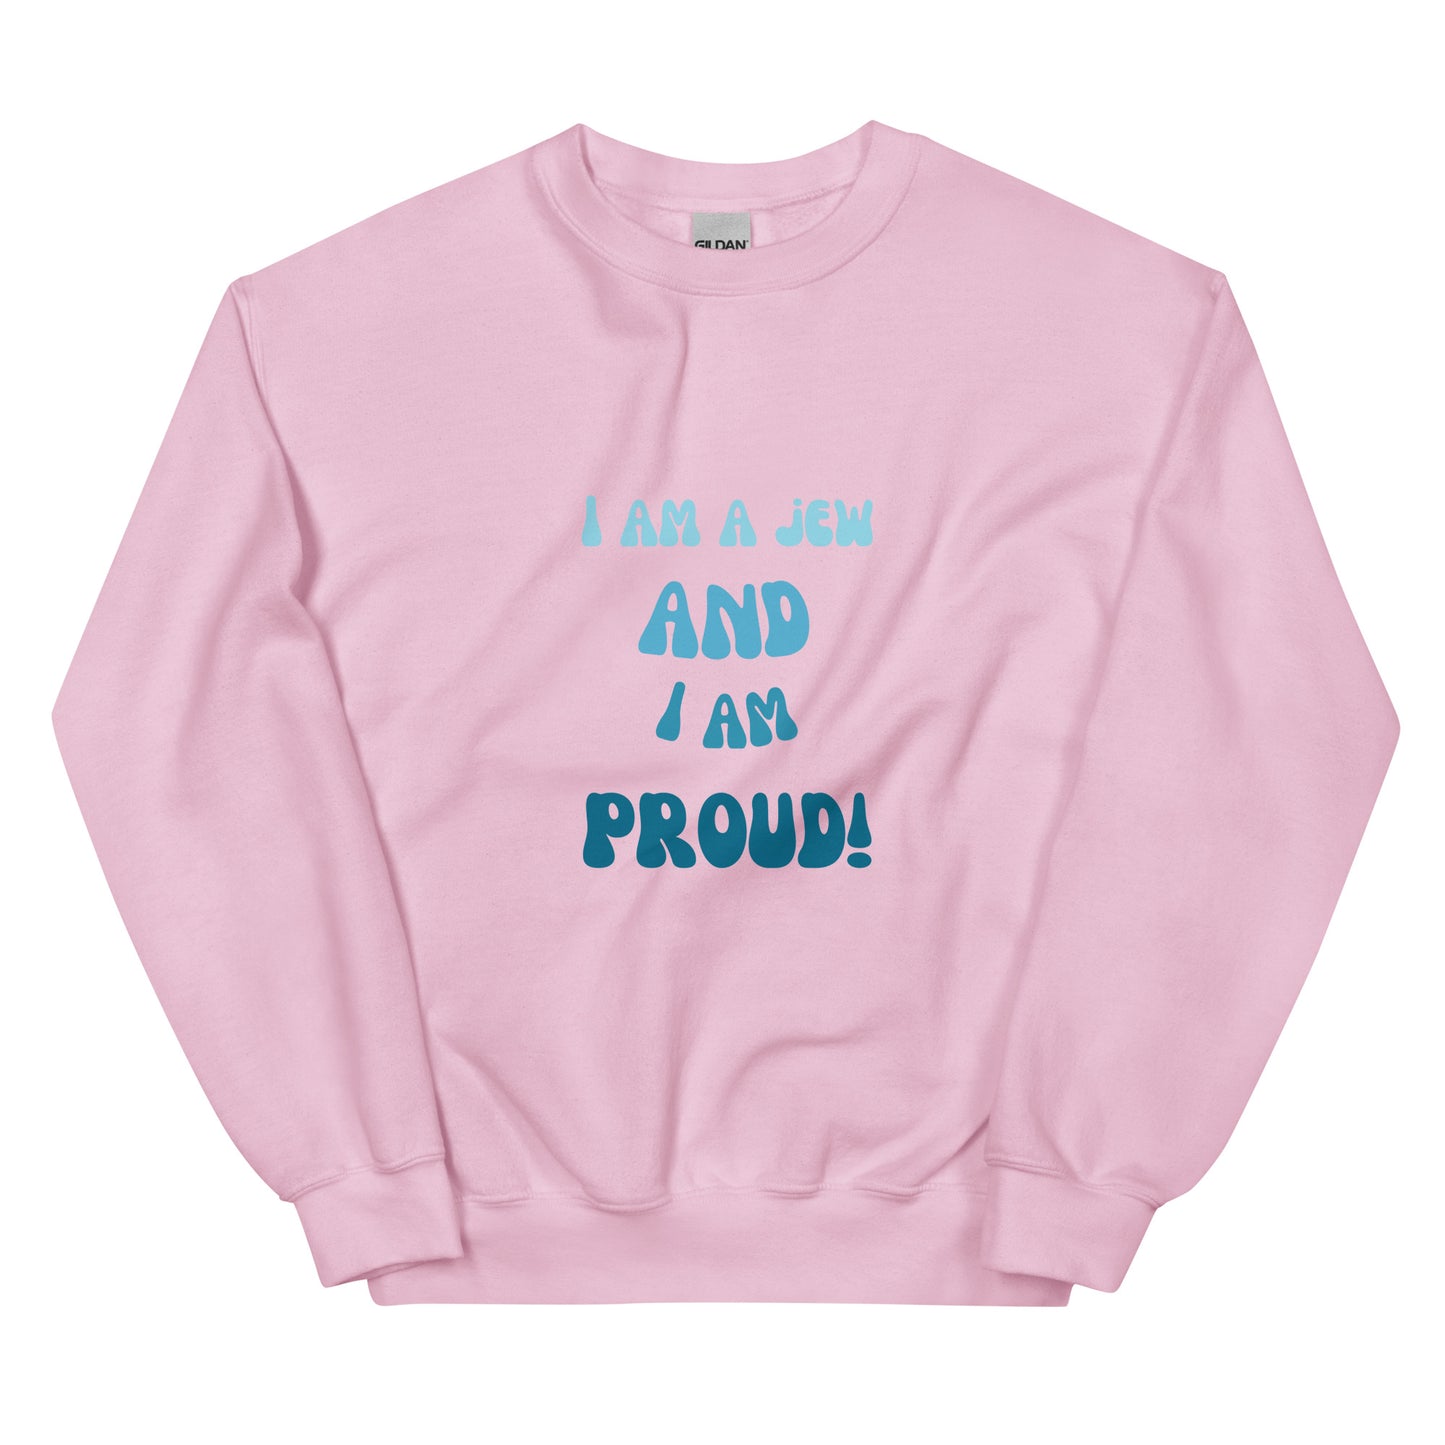 I'm a jew and i'm proud - Unisex Sweatshirt (10 colors)